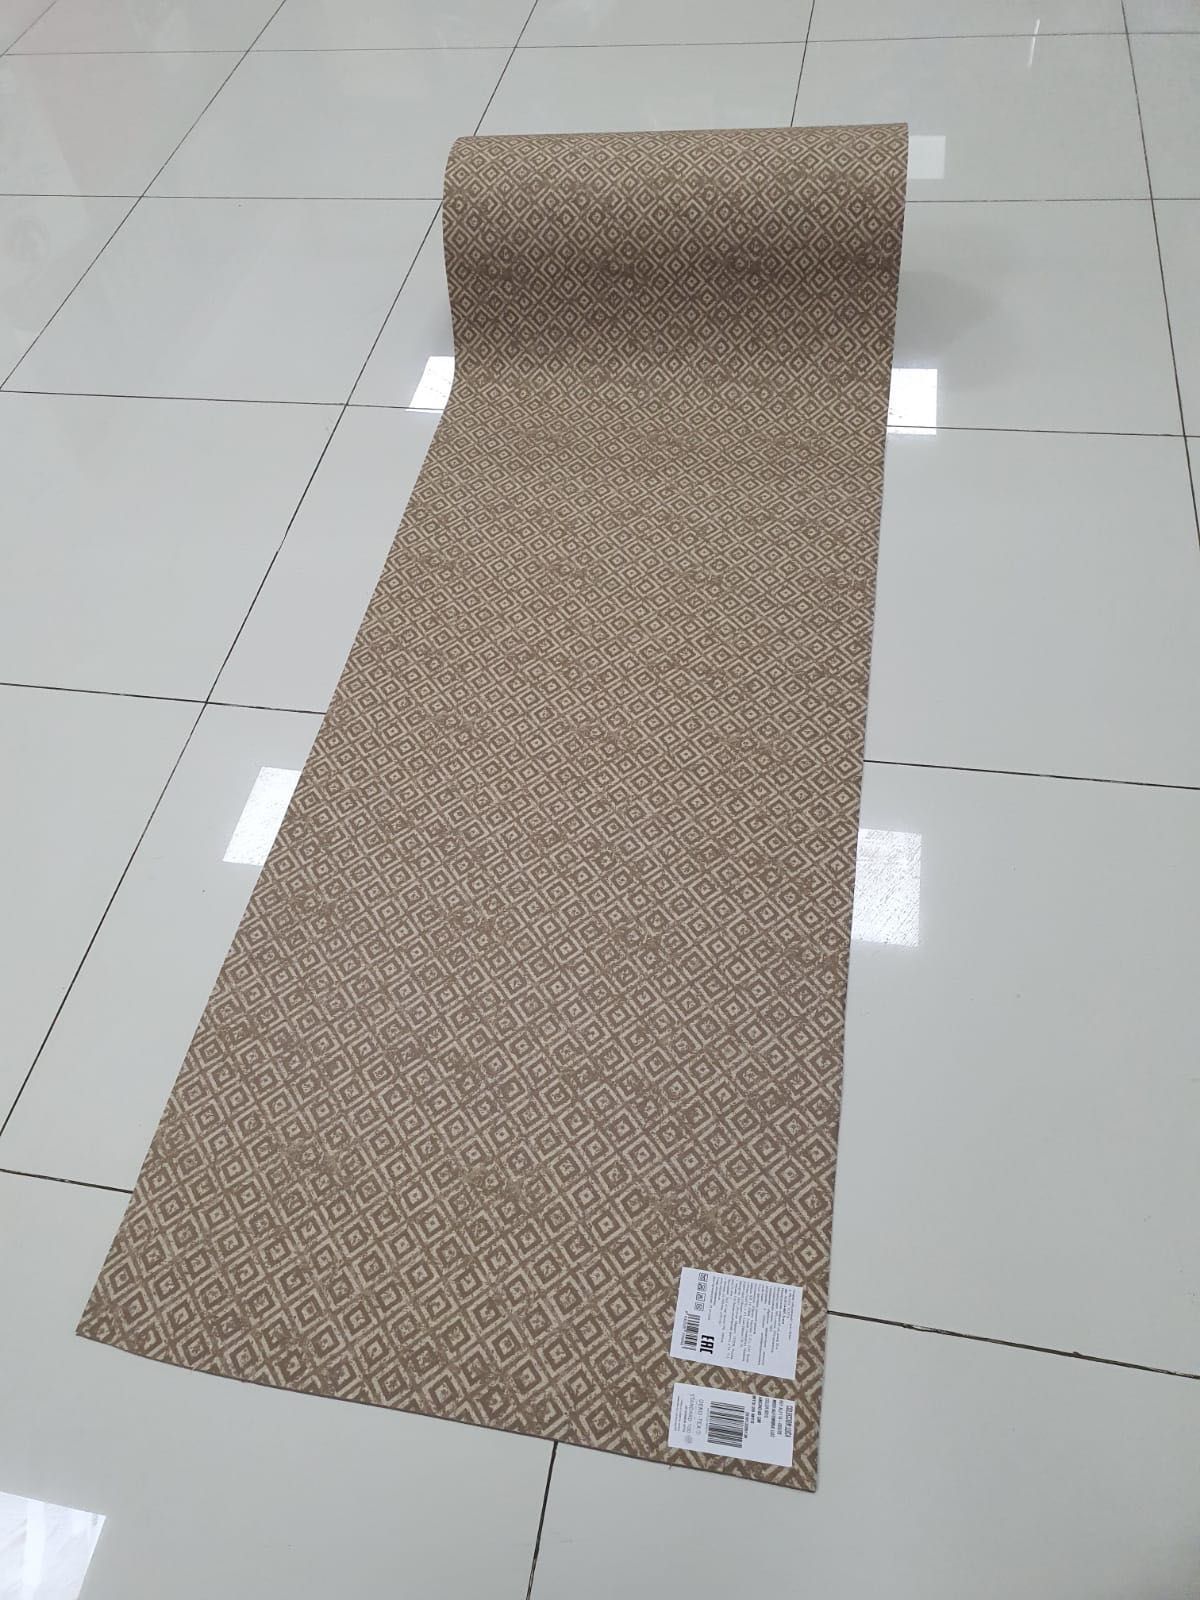 Коврик ковровая дорожка Производство Испания ширина 65 см